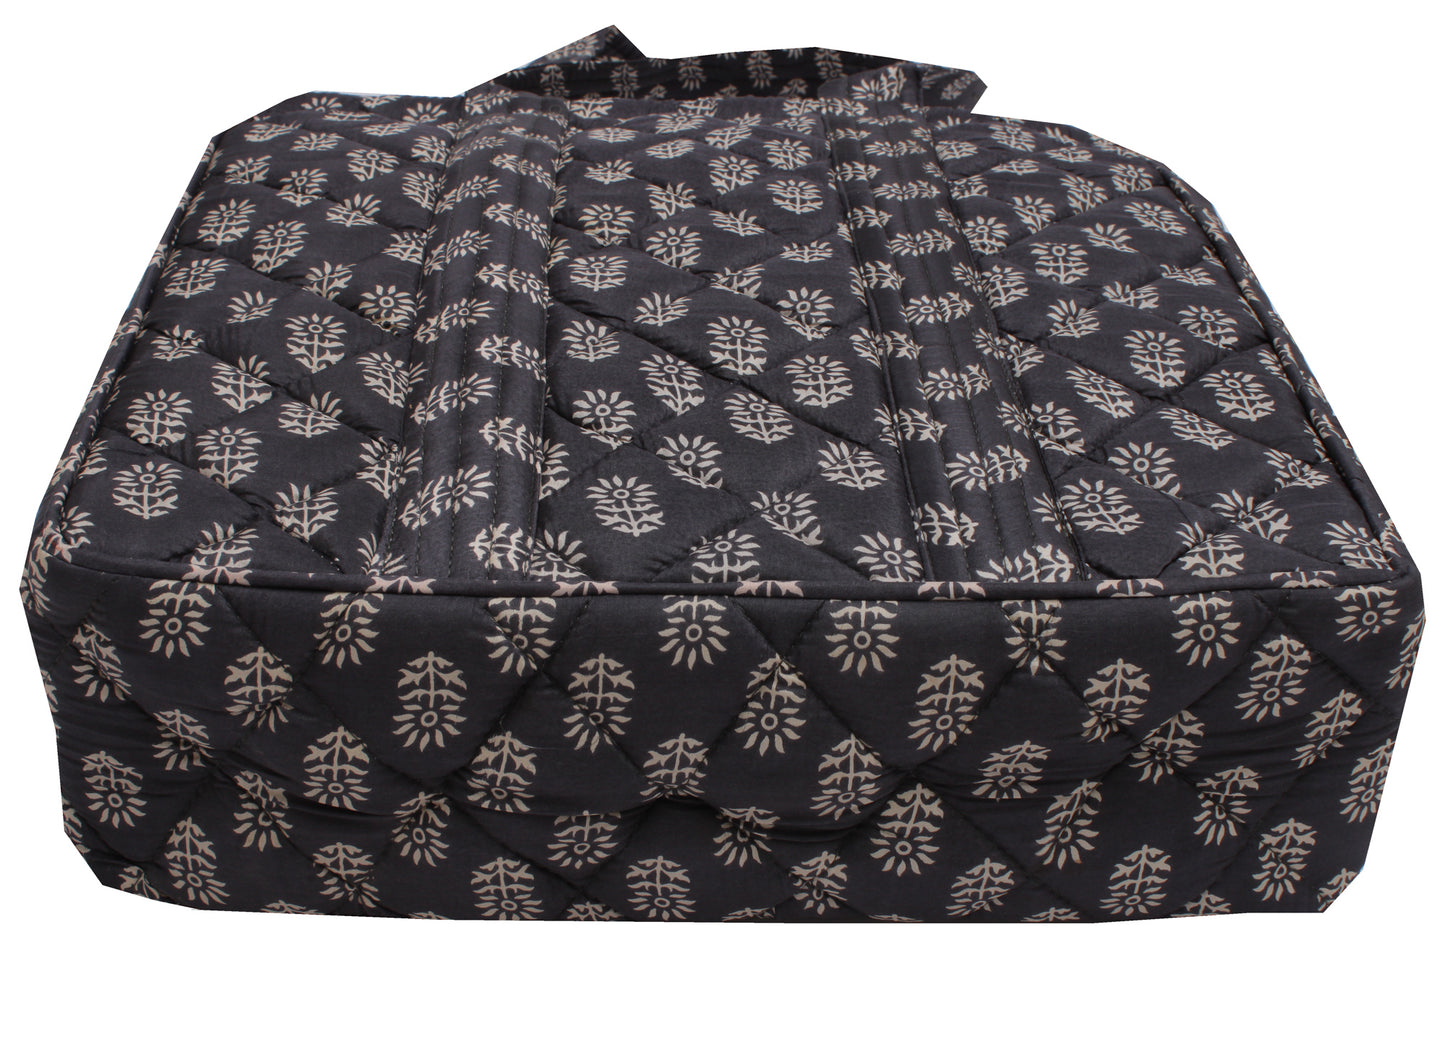 Sushila Vintage Black Tote Bag 100% Pure Silk Printed Handbag Shoulder Bag